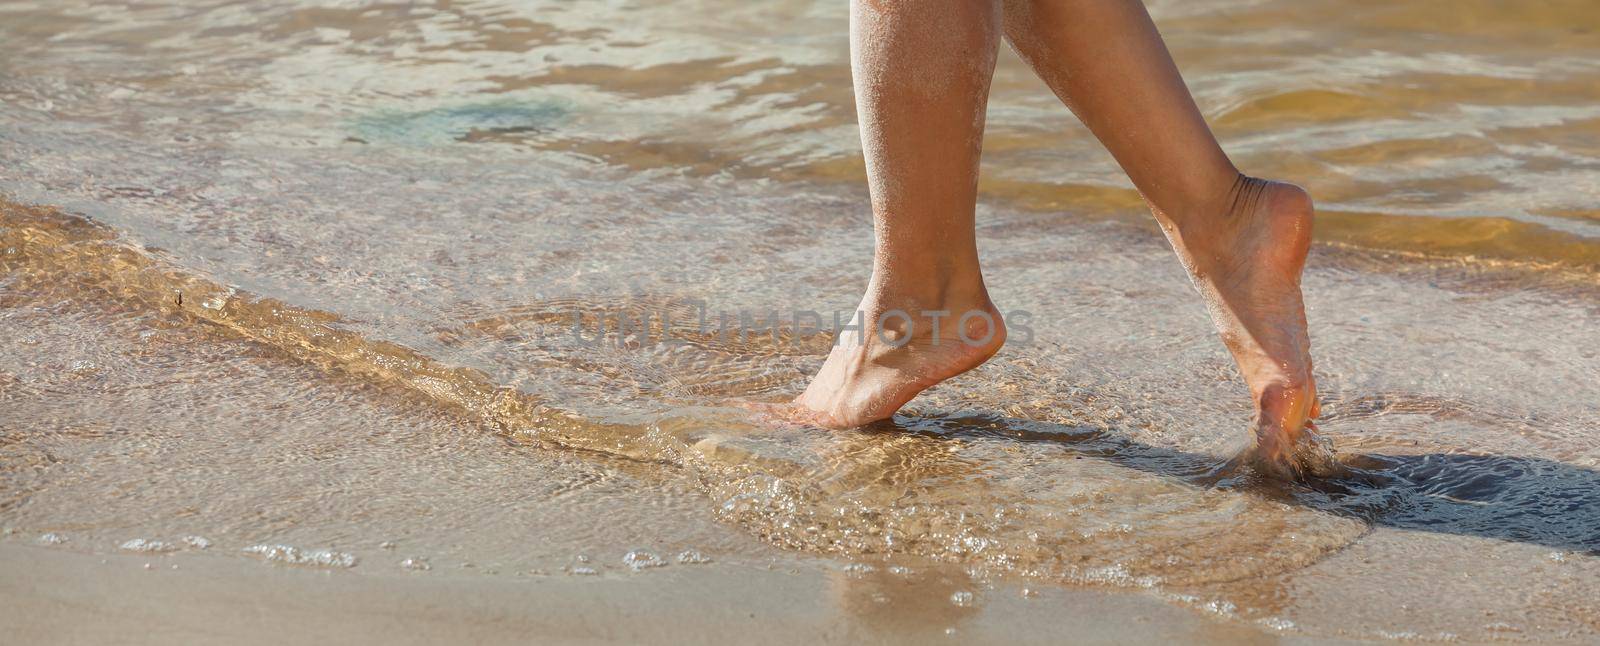 female feet on the seaside by palinchak